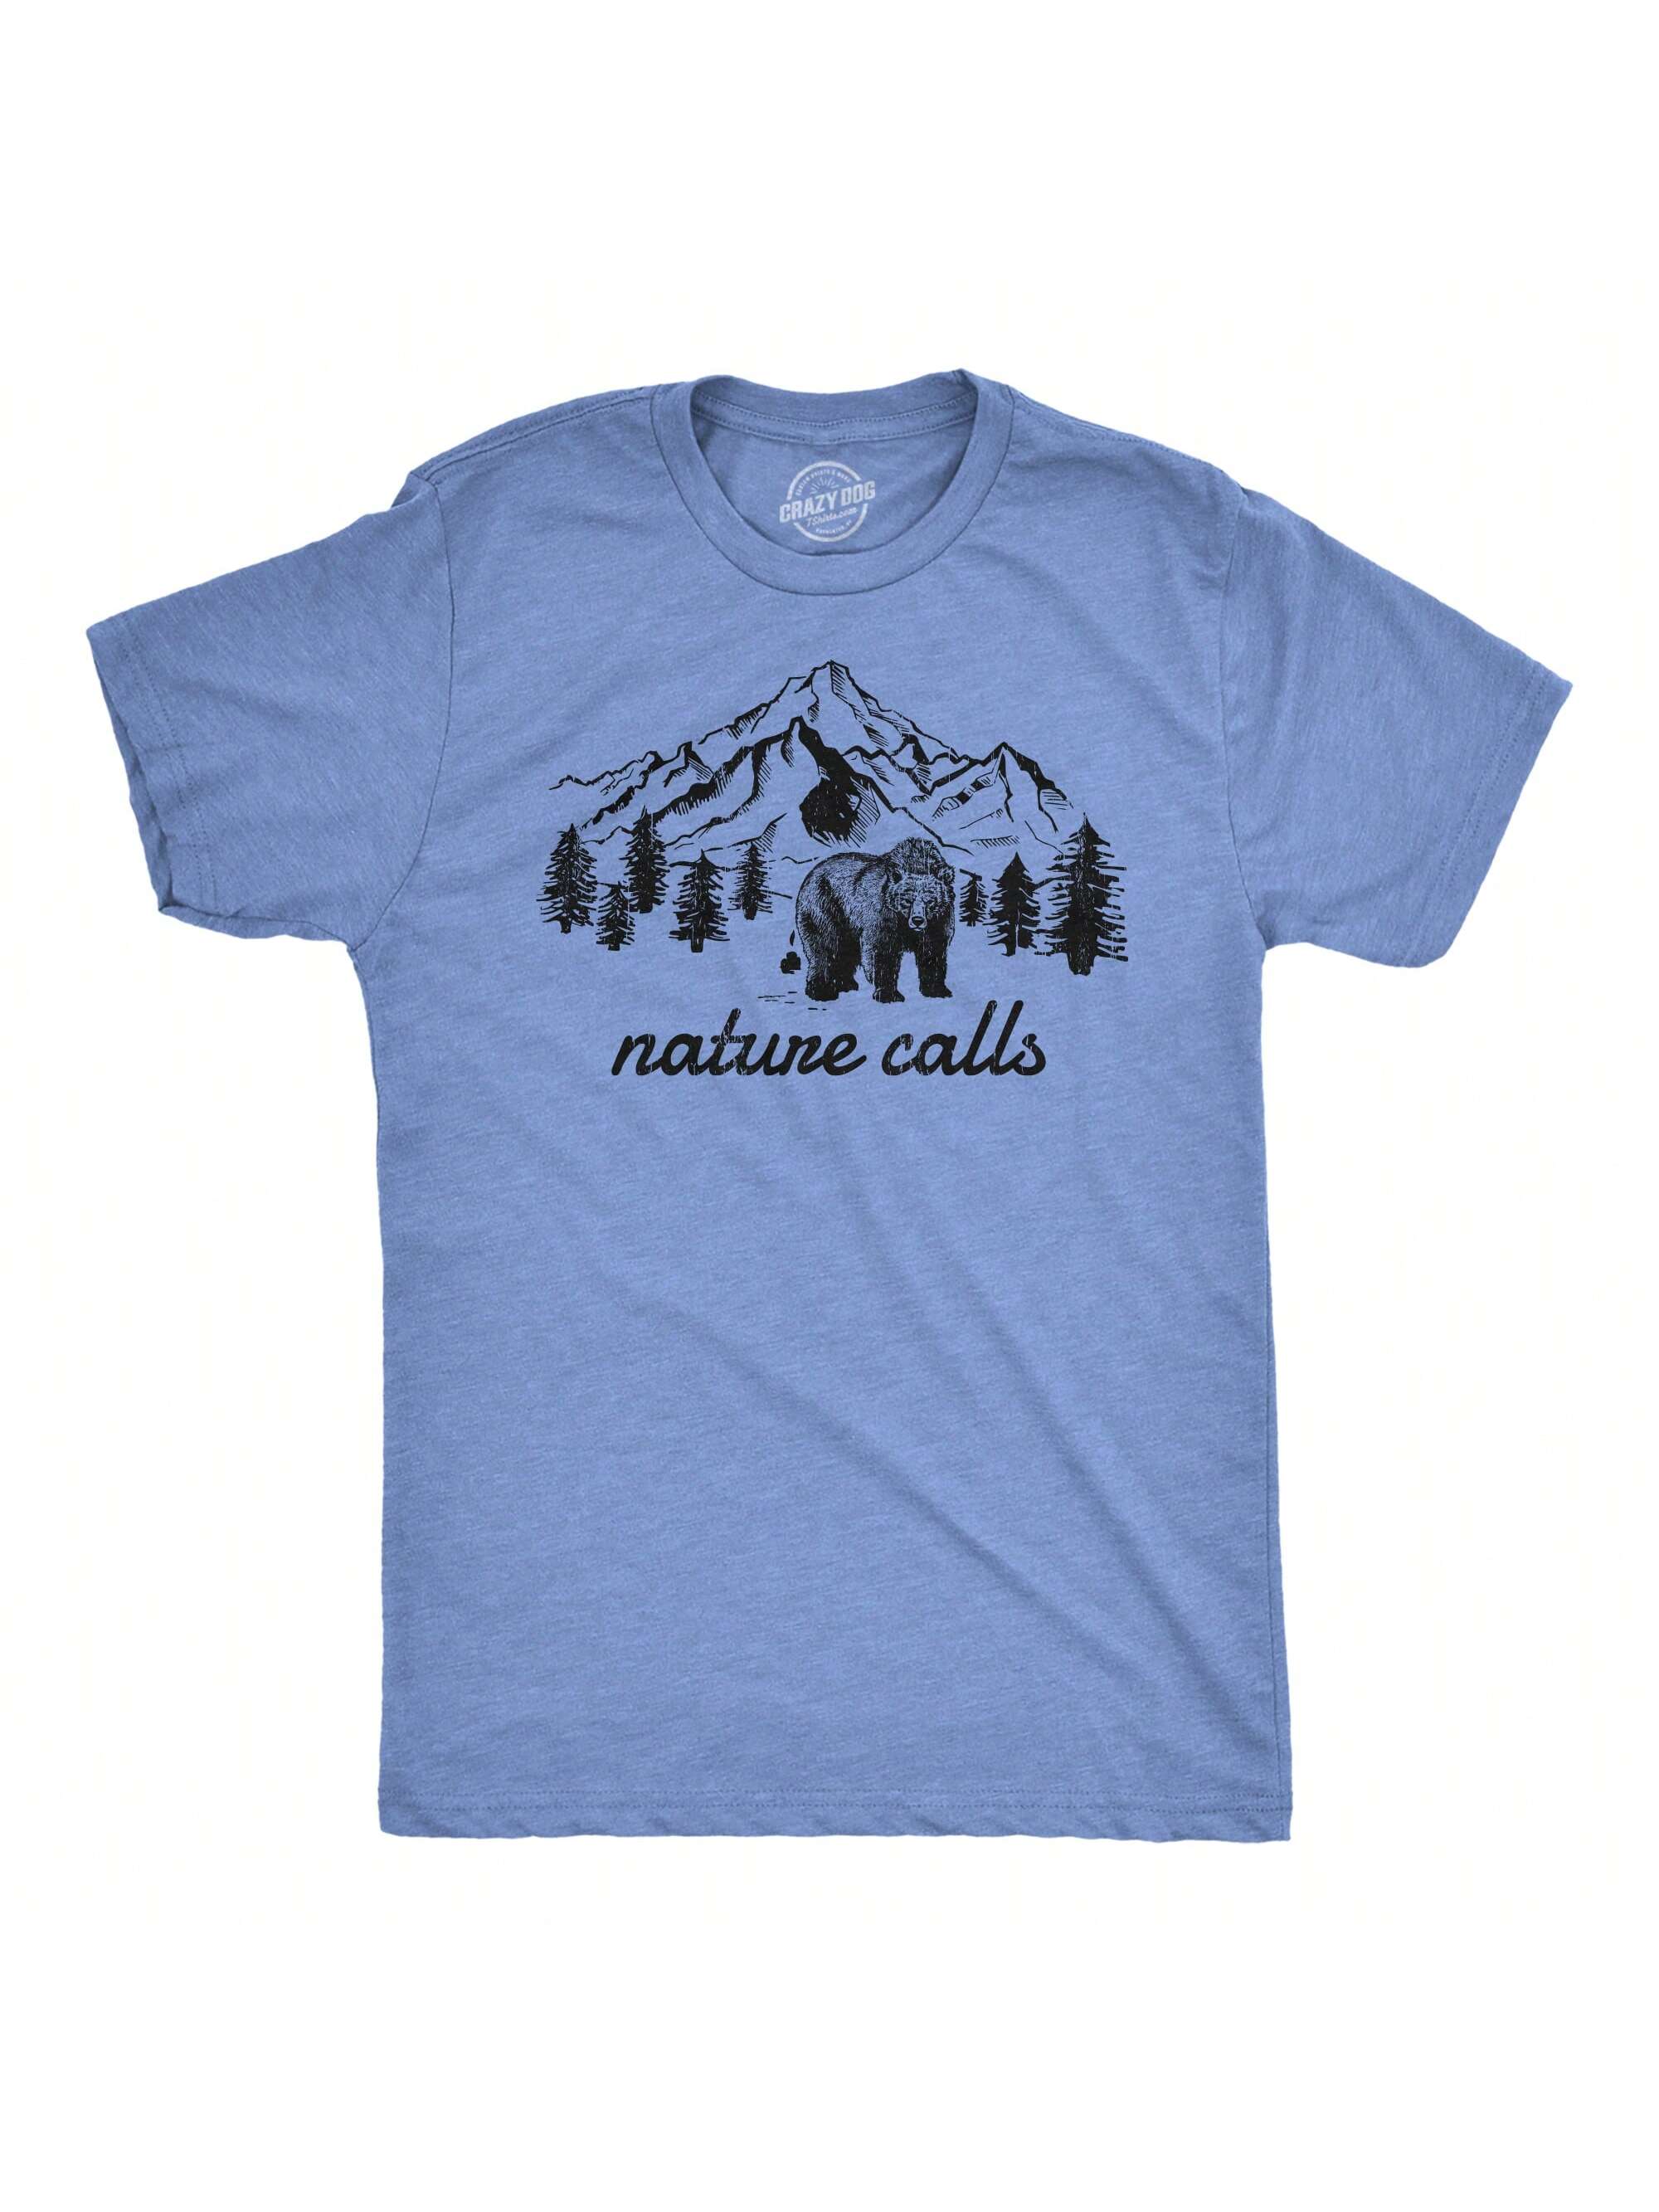 Мужская футболка «Nature Calls» с забавной саркастической надписью «Медведь какает», светло-голубой вереск - природа